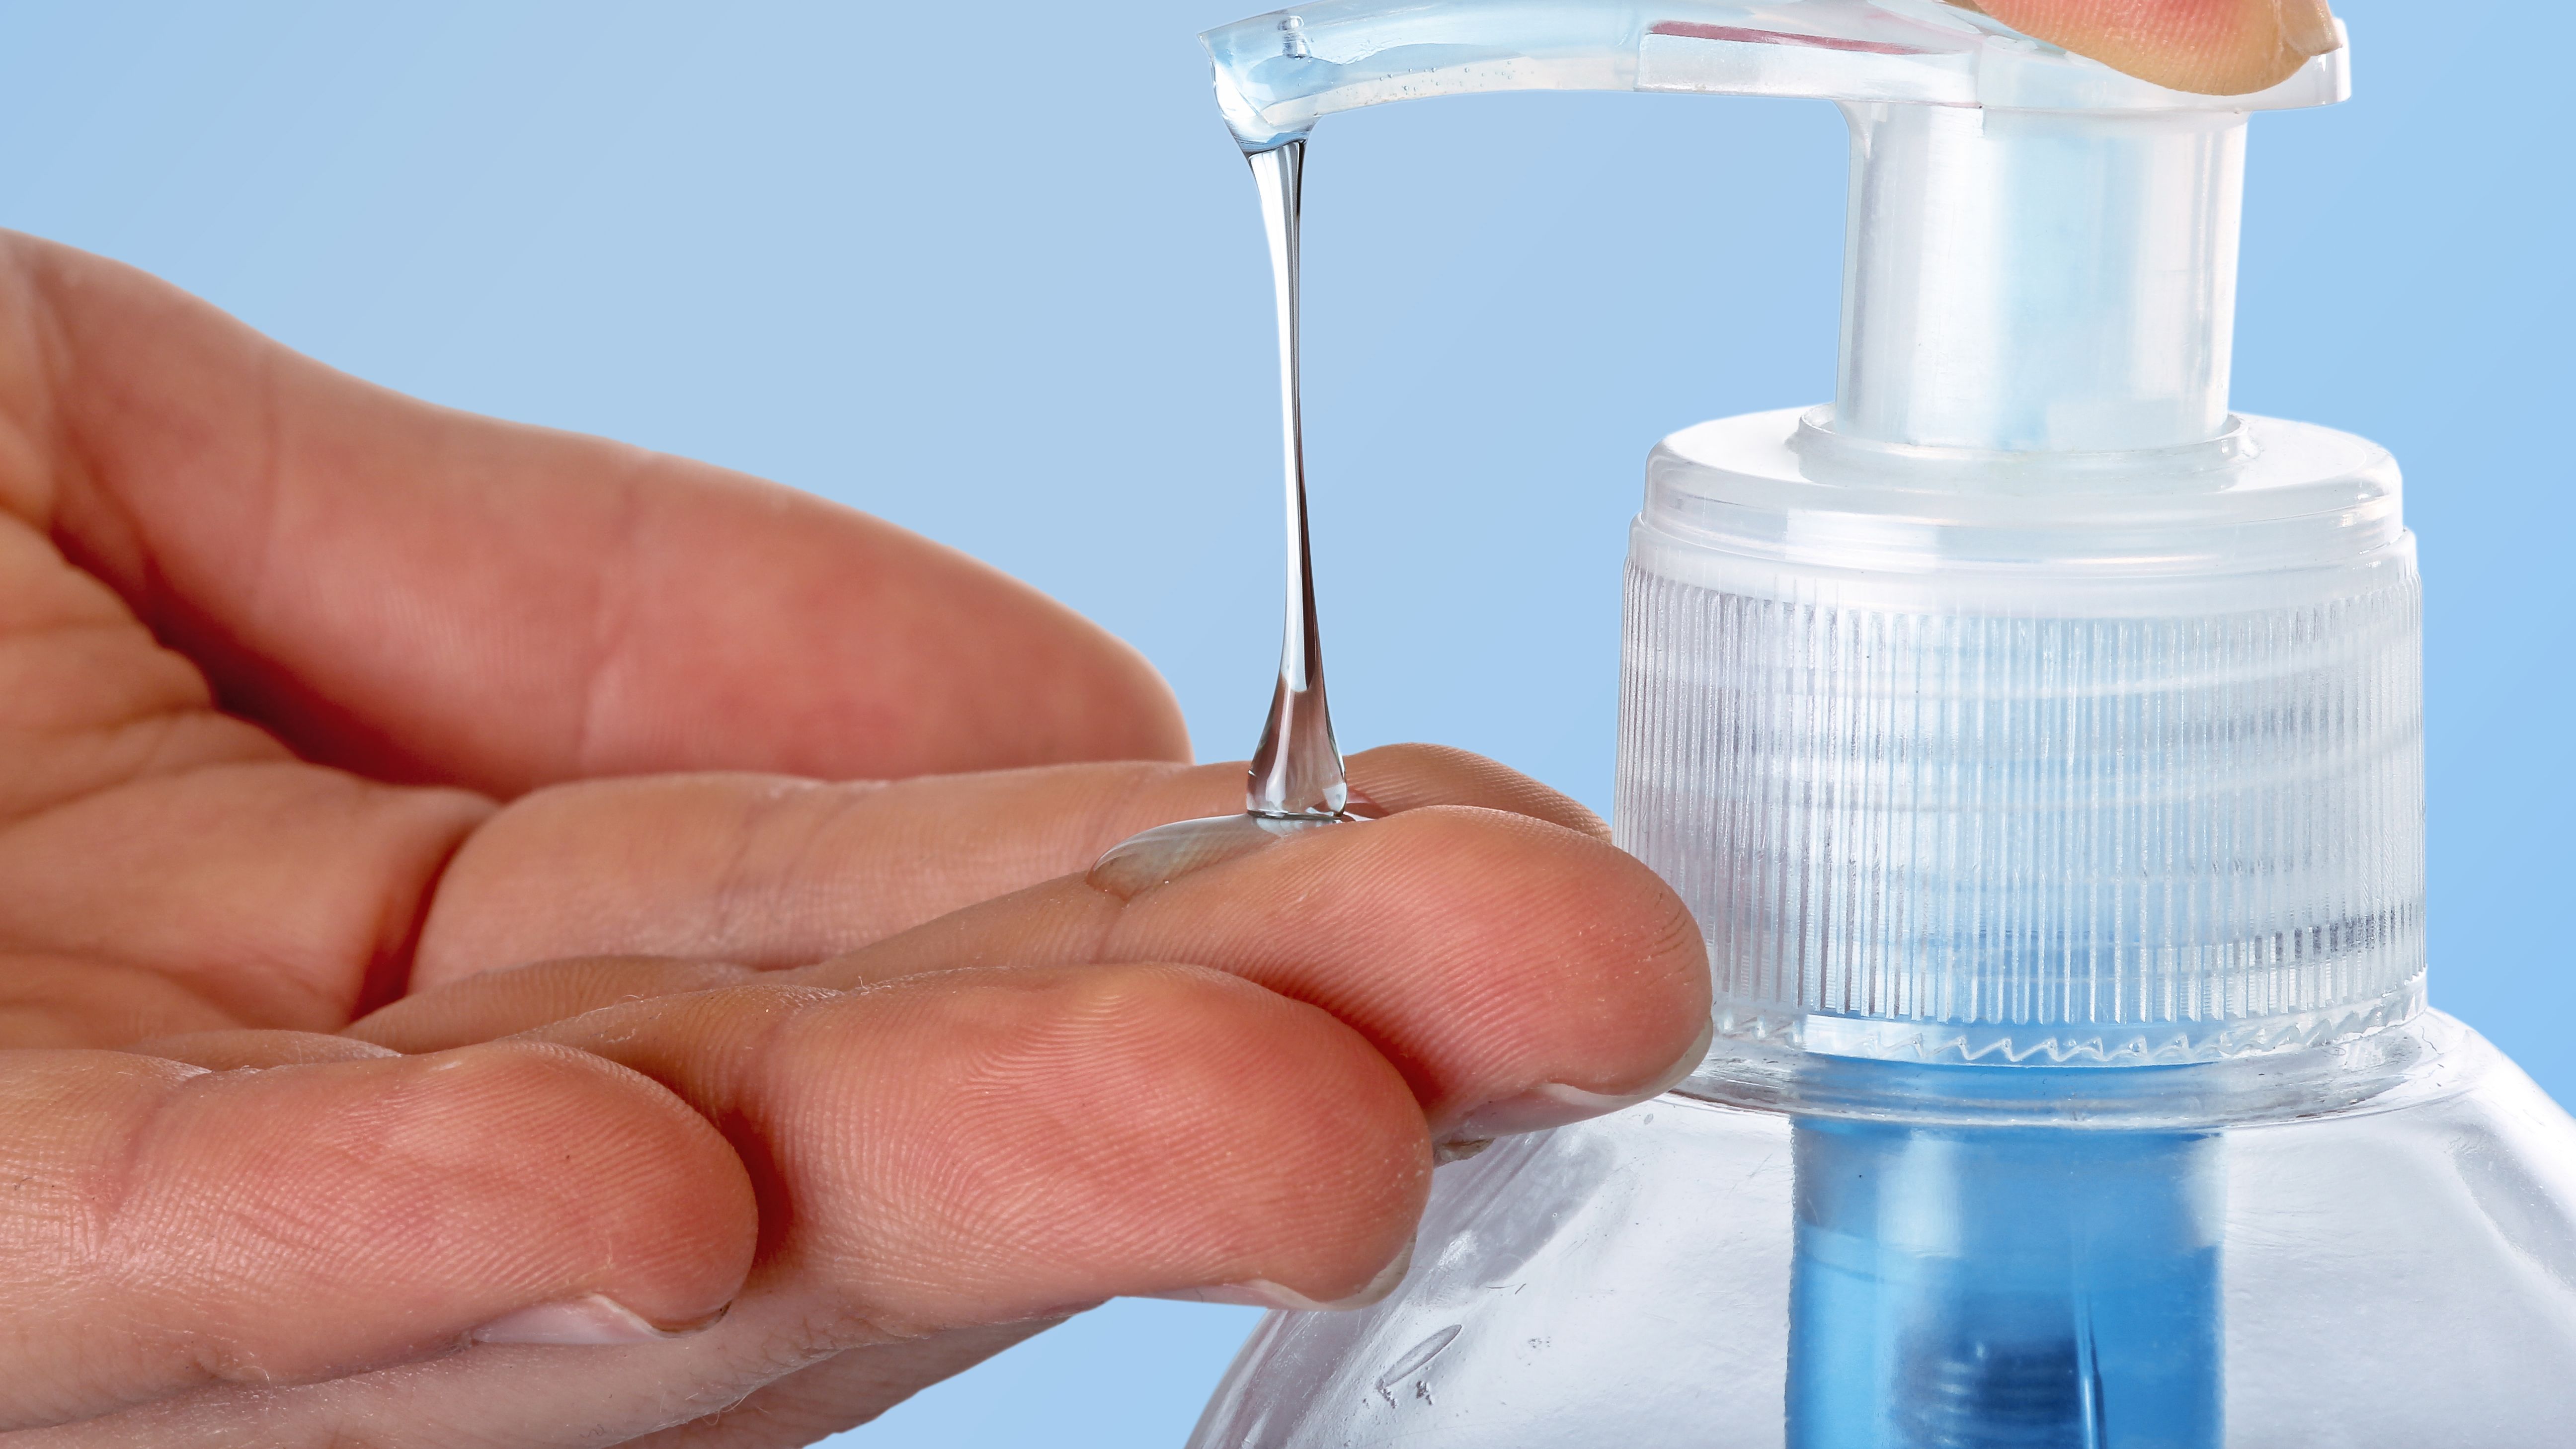 Coronavirus news update: How to spot fake hand sanitizers for